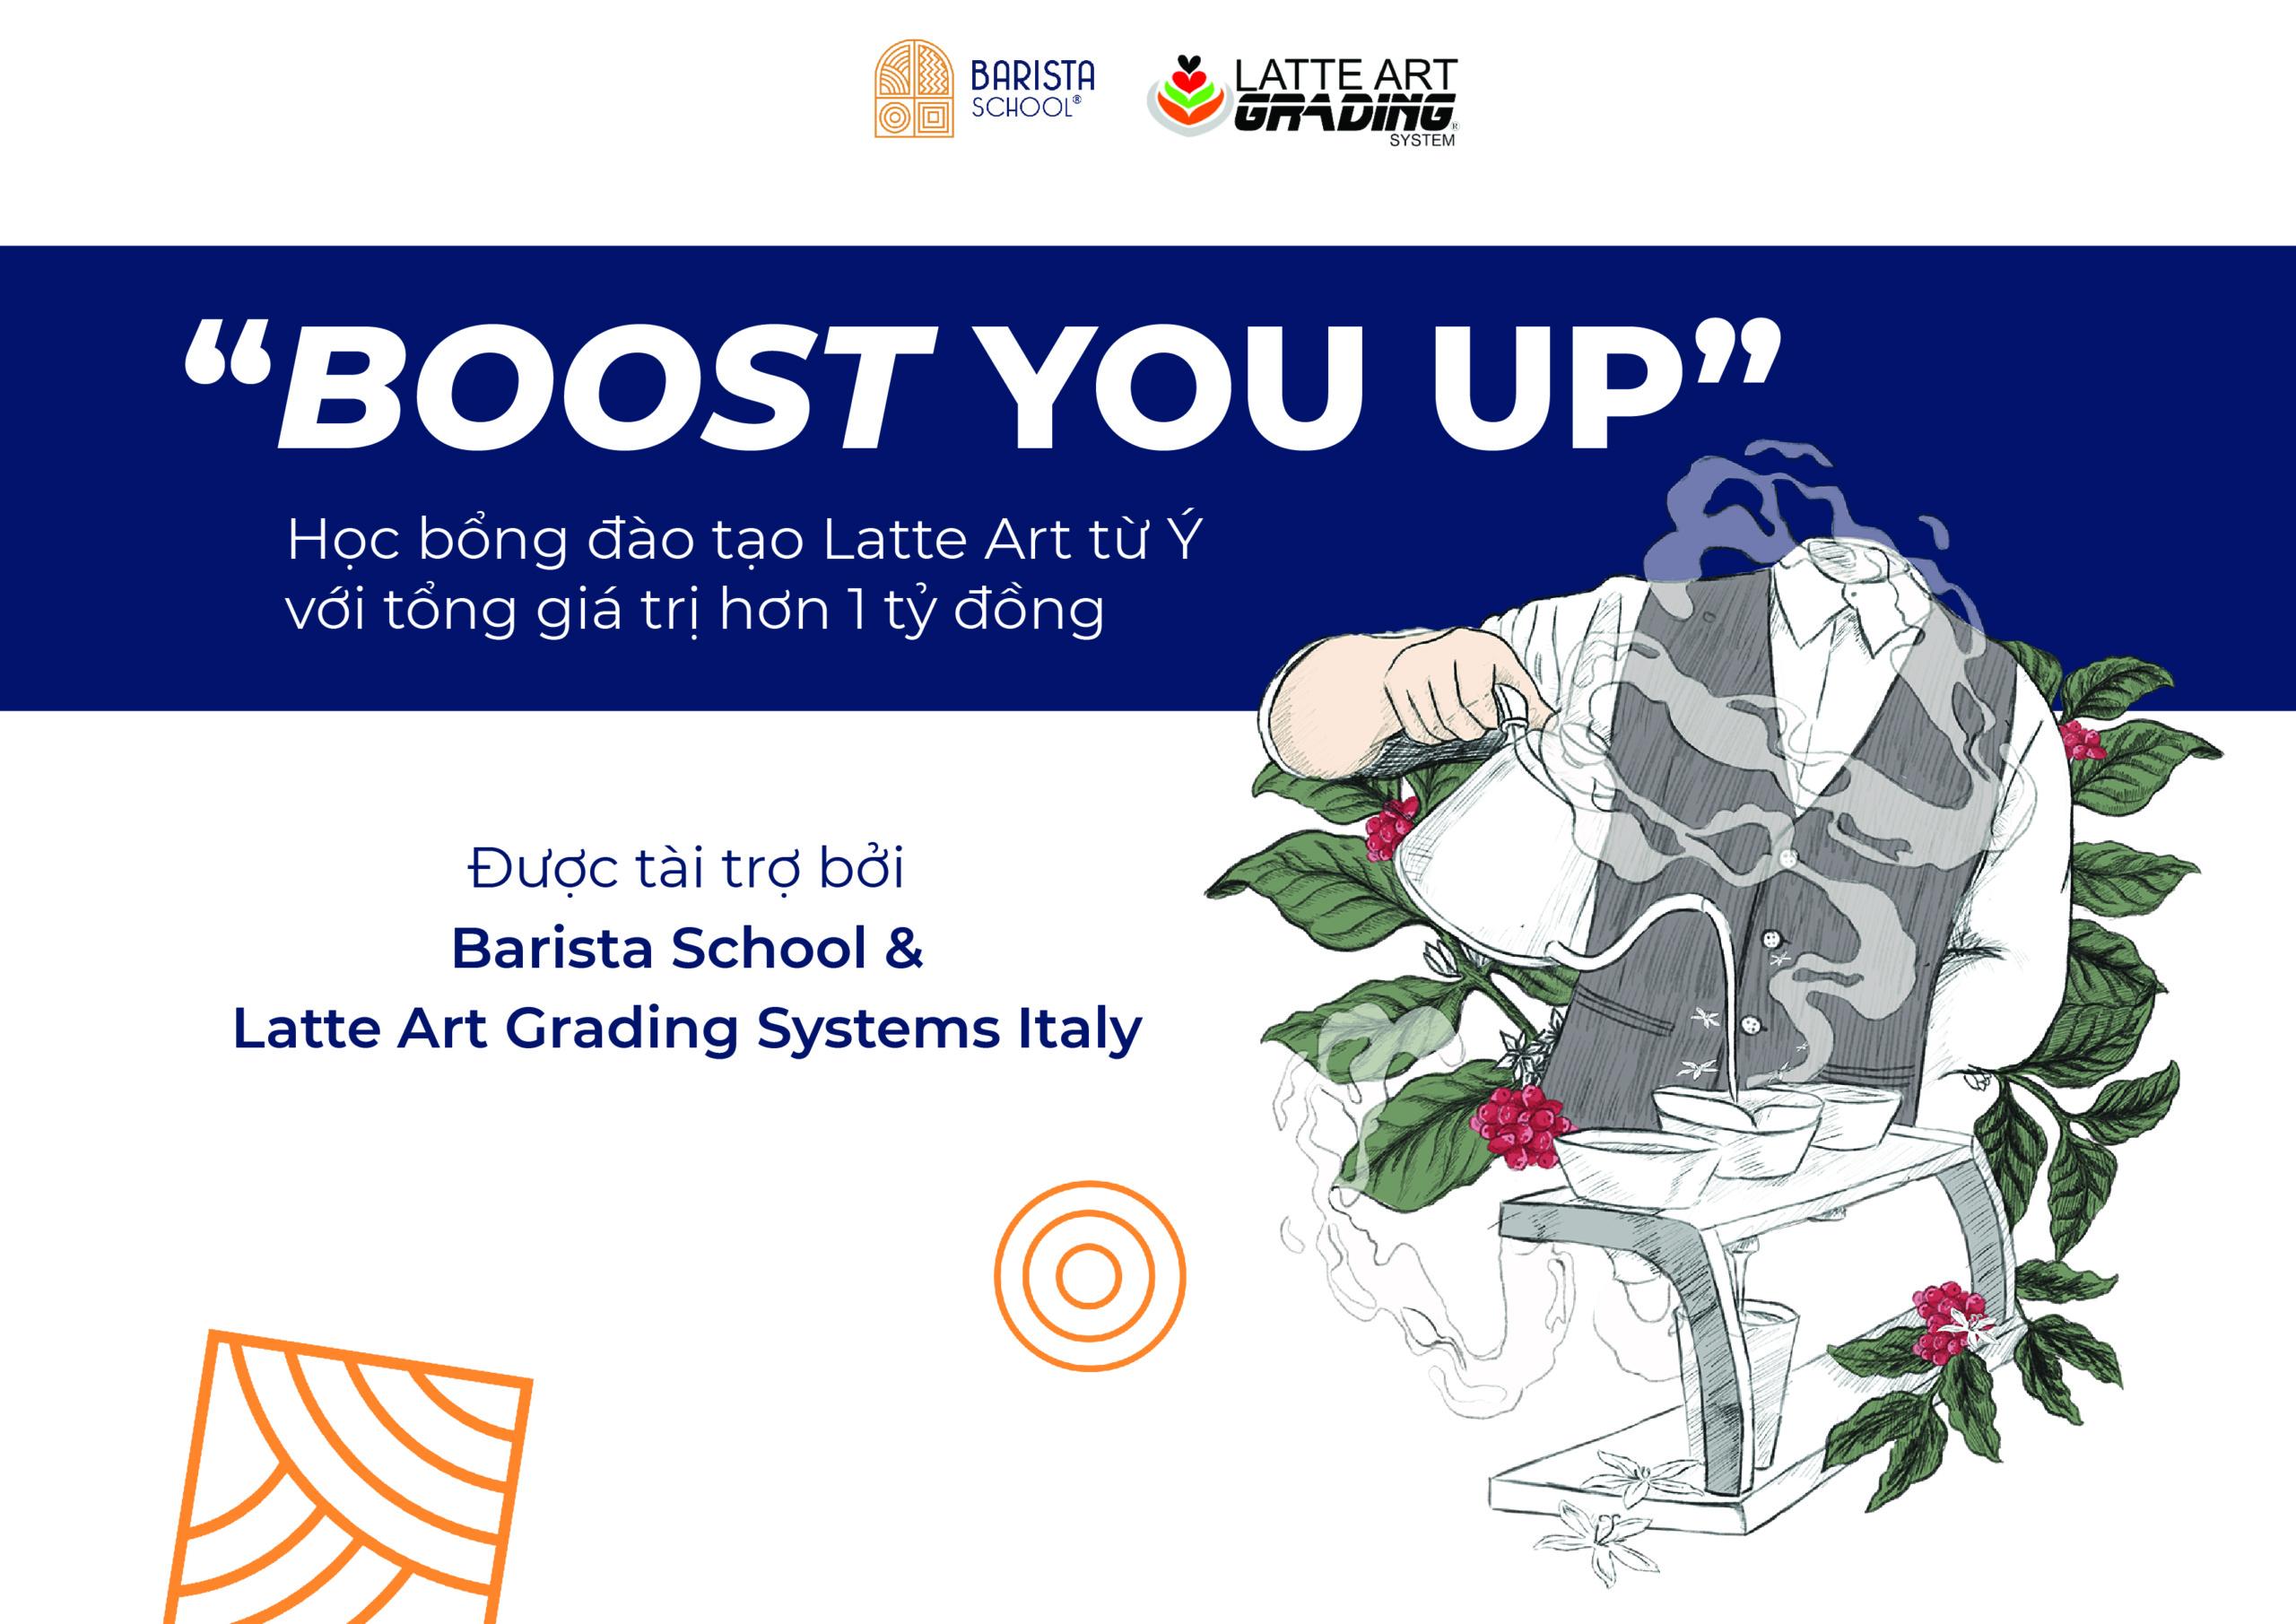 Nắm bắt cơ hội nhận học bổng đào tạo Latte Art từ Ý - BOOTS YOU UP